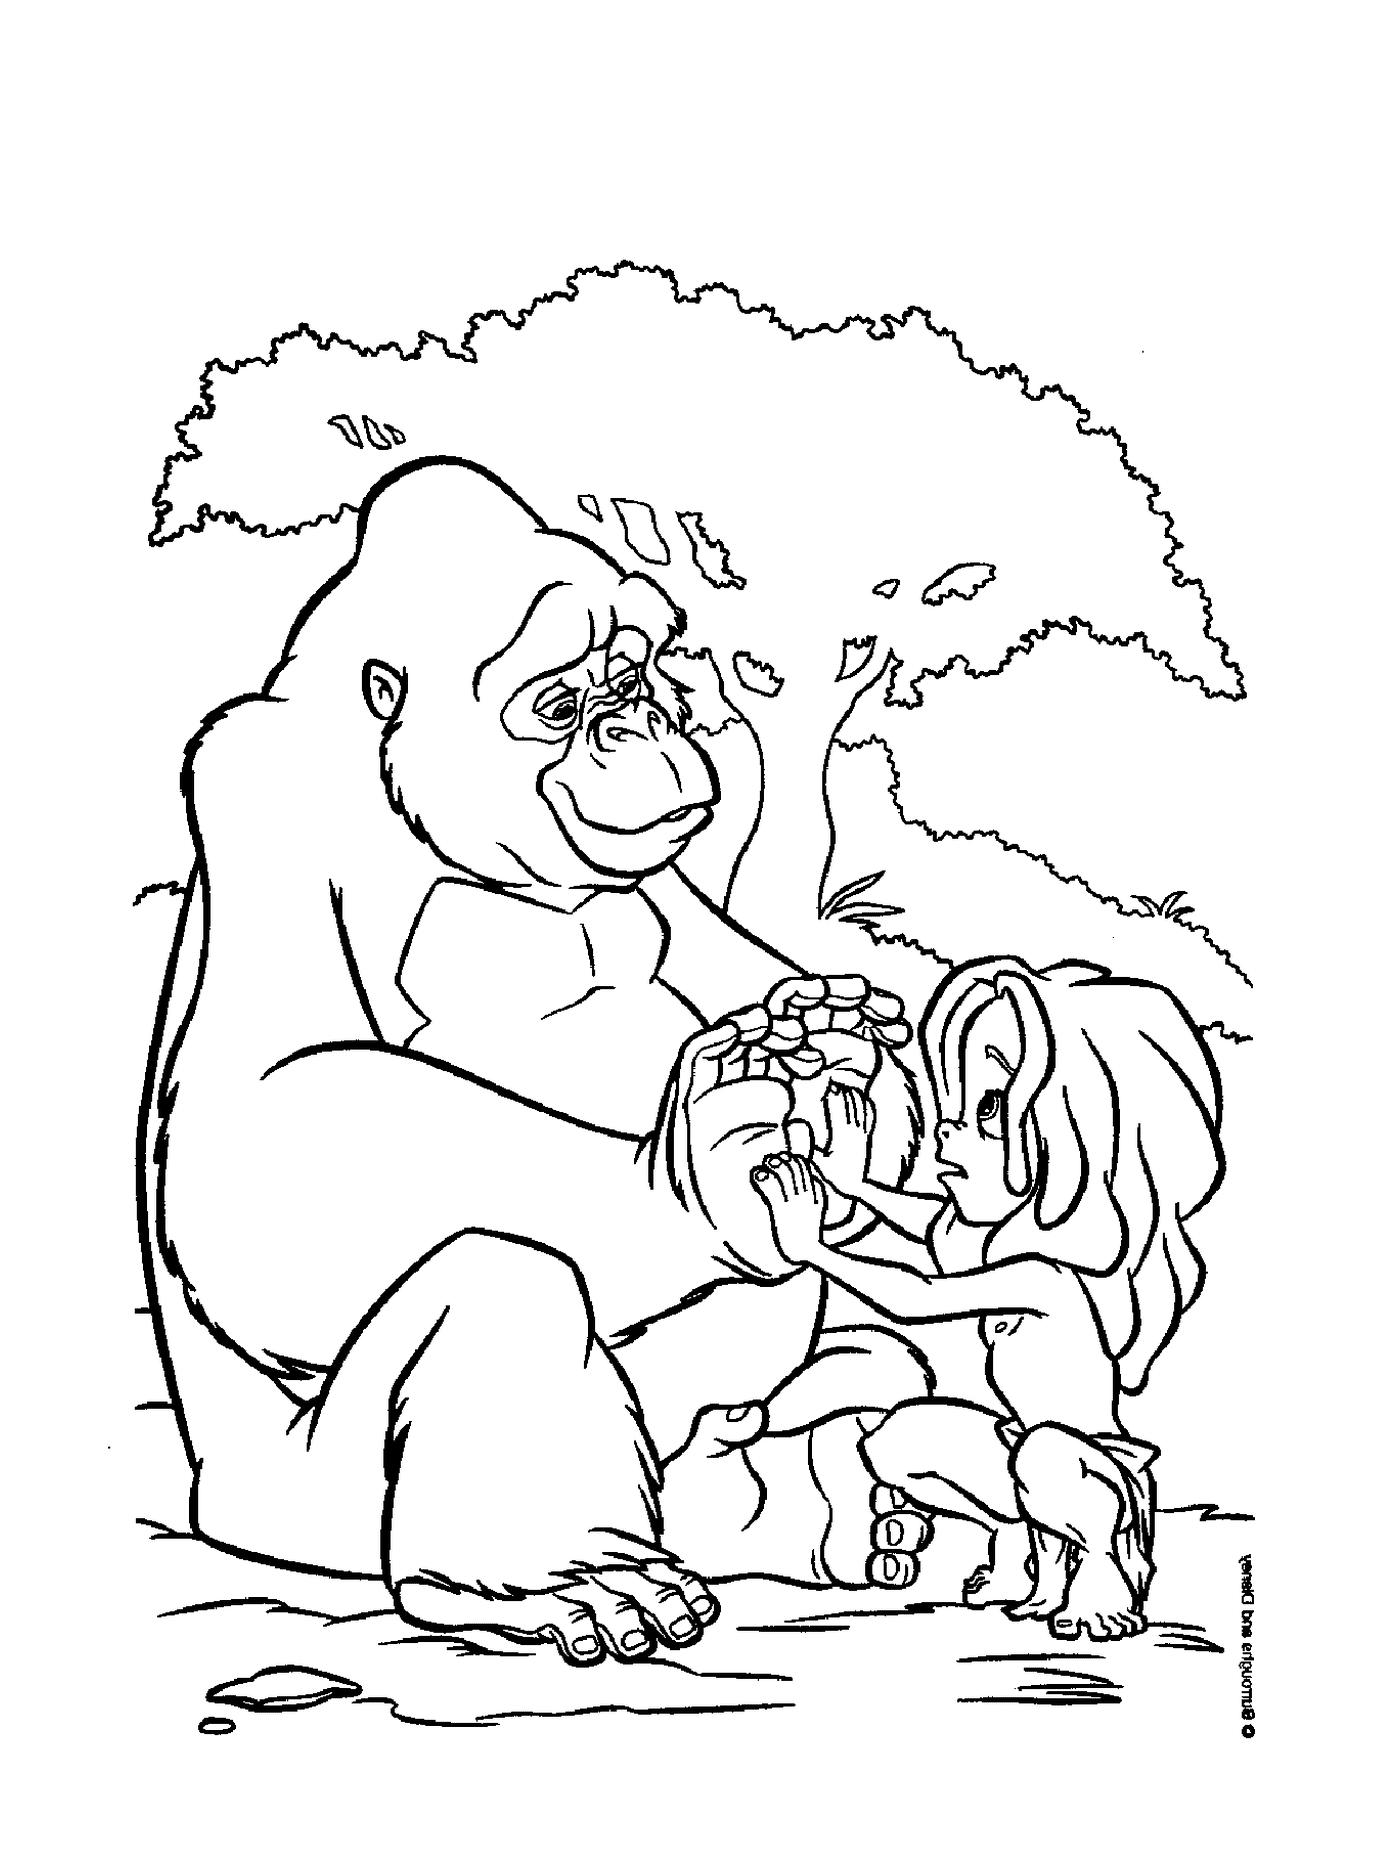  Adultos y niños jugando con un gorila 